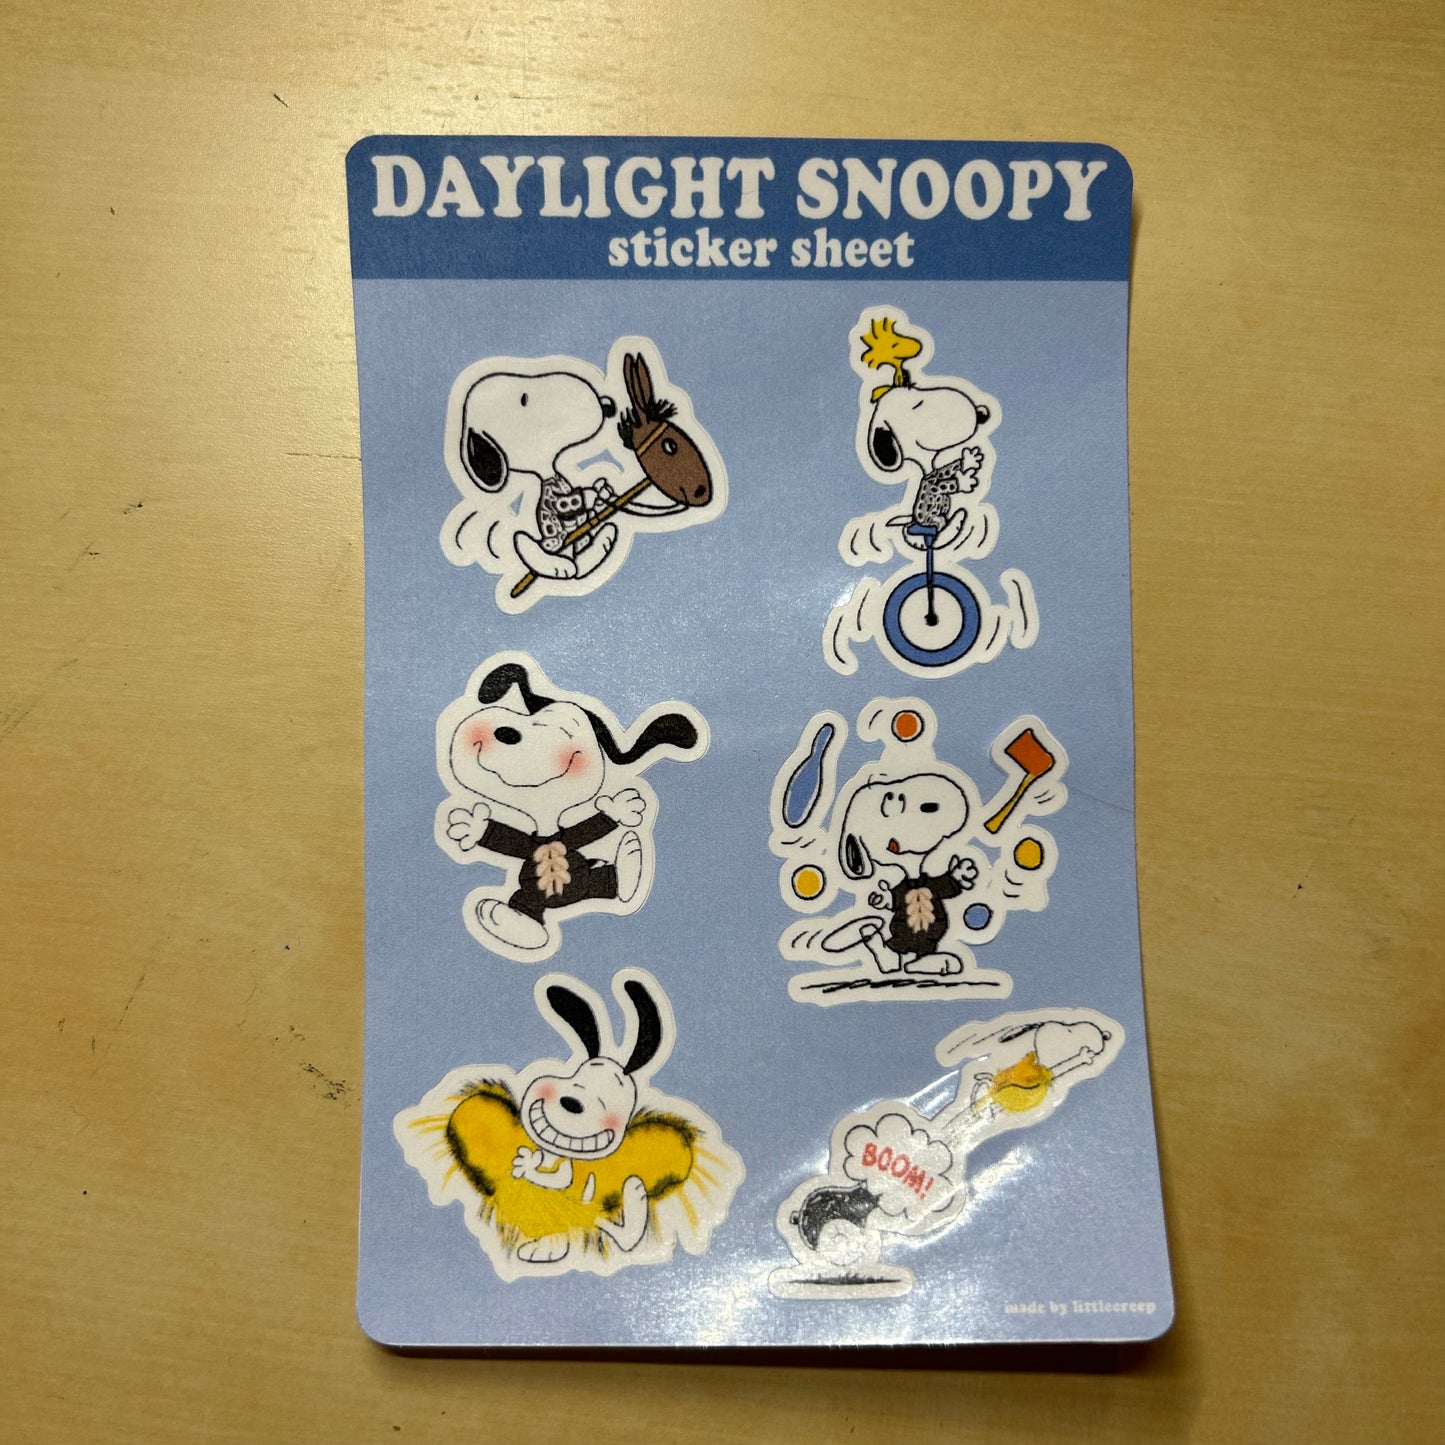 Daylight Snoopy Sticker Sheet